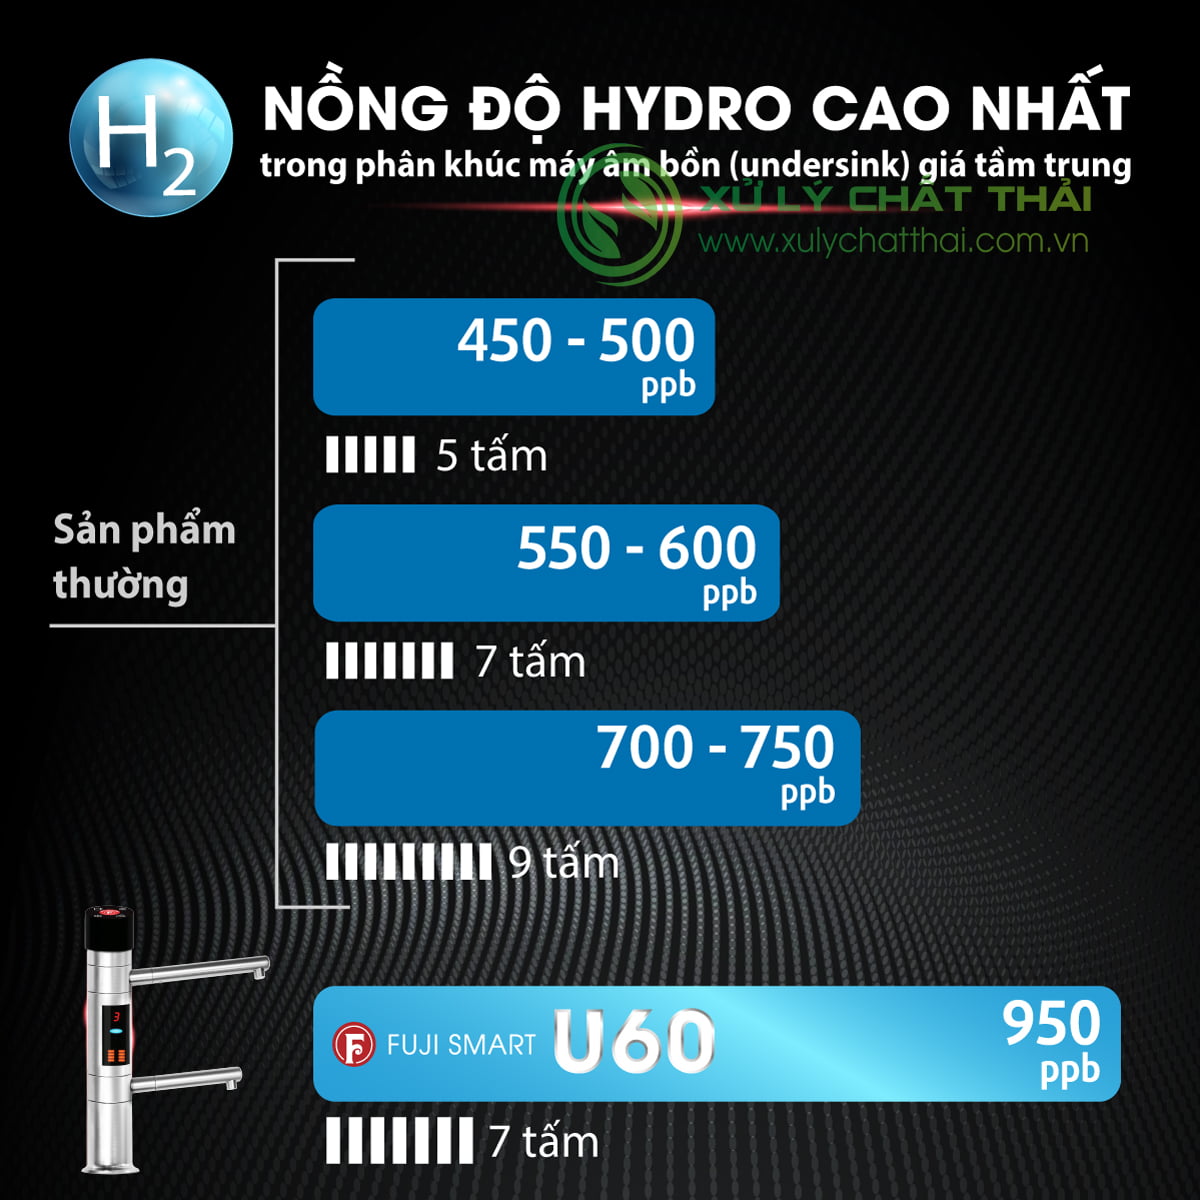 Máy lọc nước ion kiềm Fuji Smart U60 có nồng độ pH cao nhất